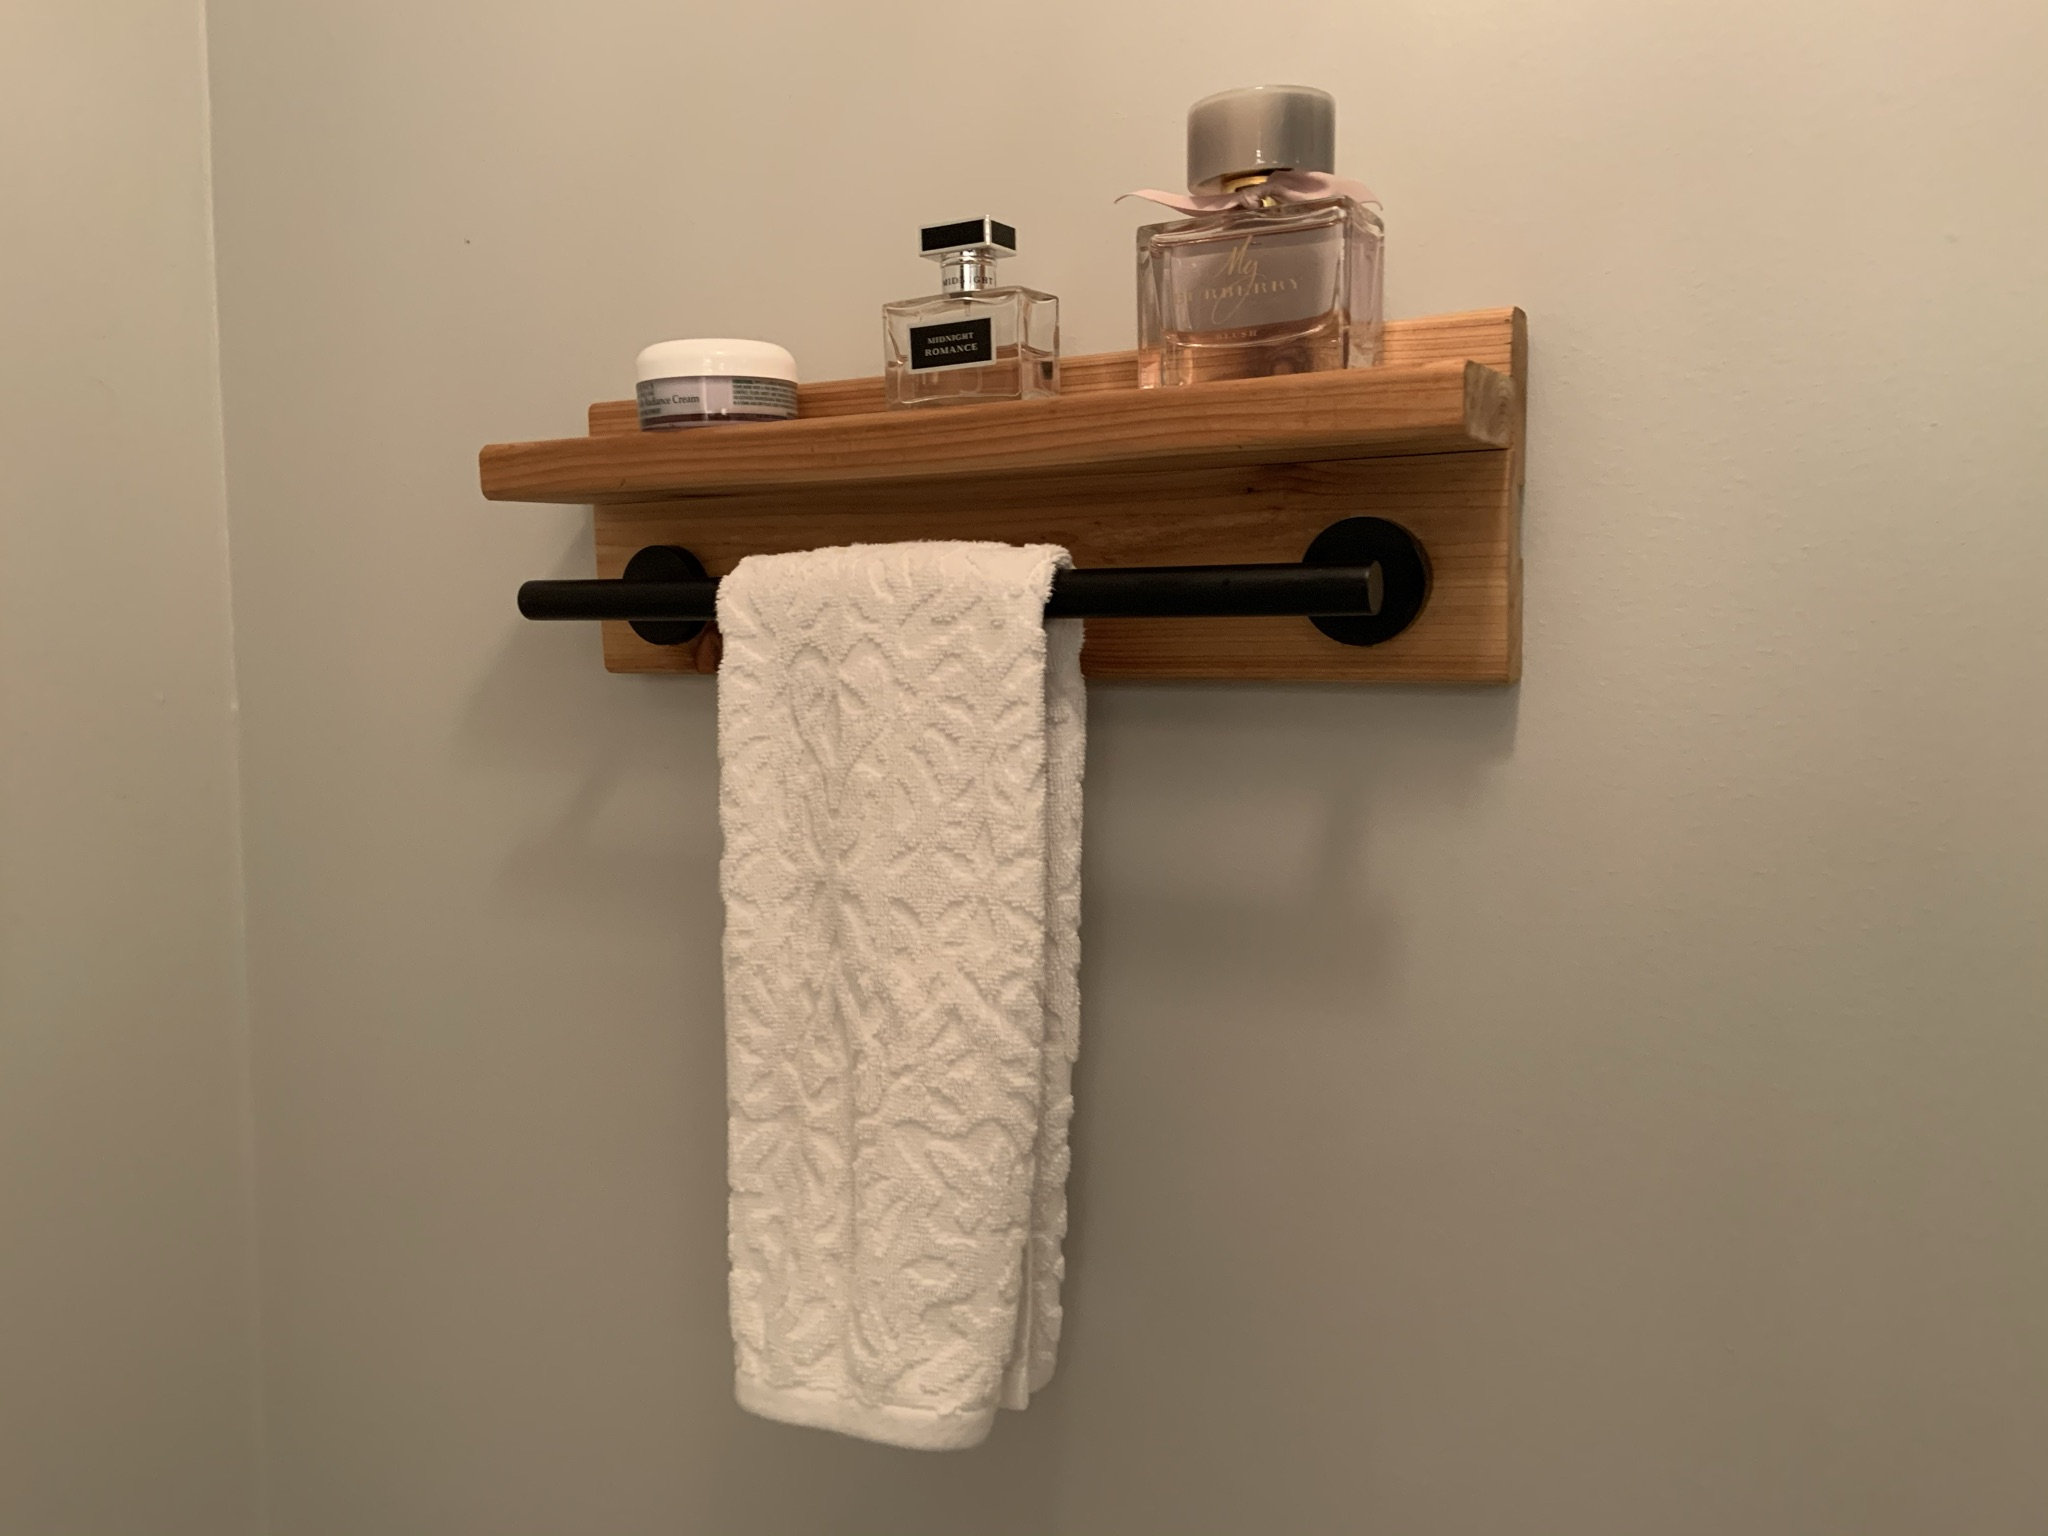 Baño y cocina Pequeño toallero con estante toallero de mano | Etsy